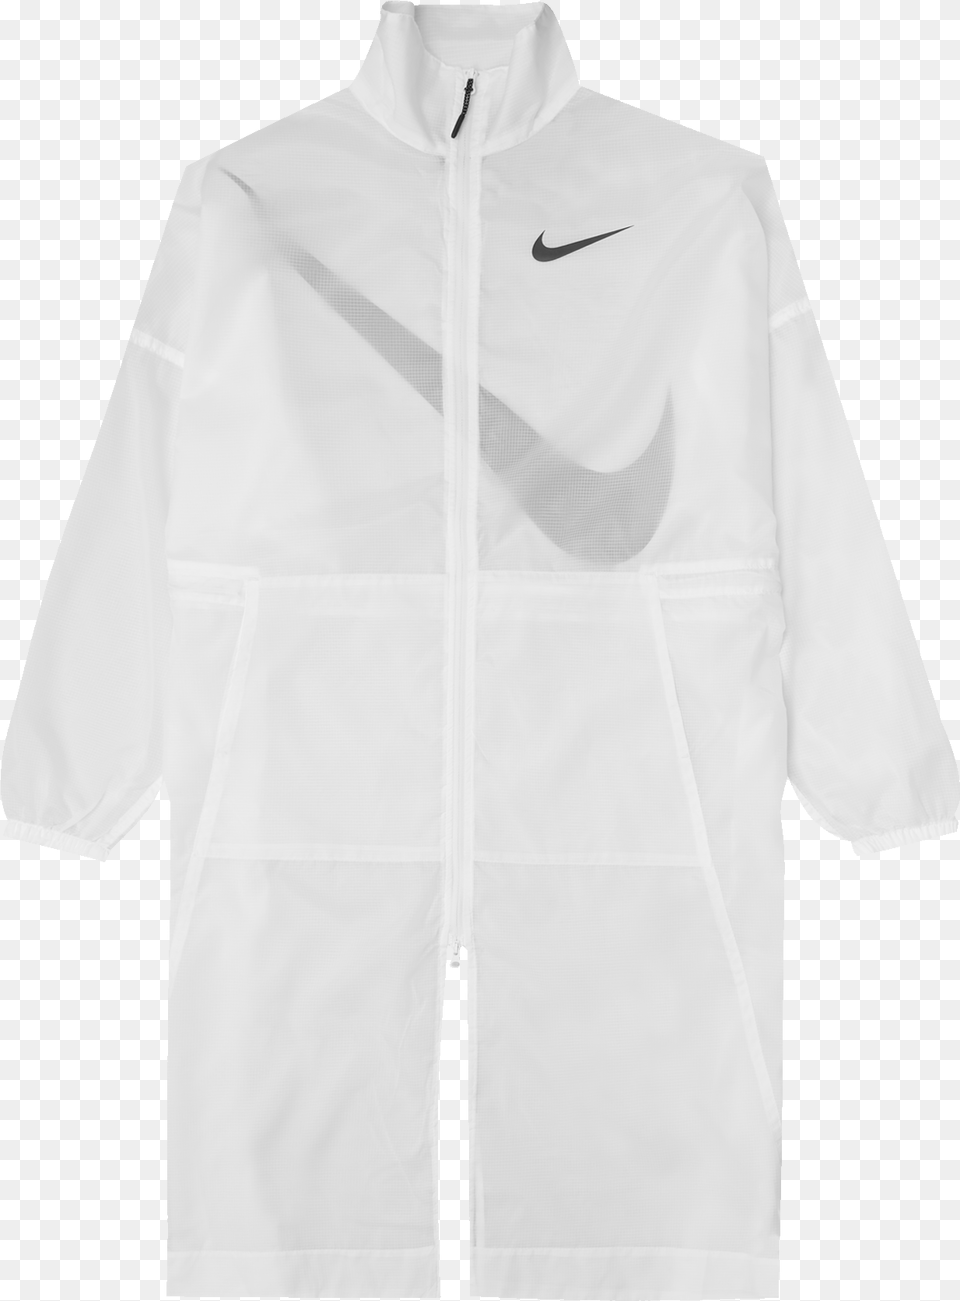 Nike Swoosh Jacket White, Clothing, Coat, Lab Coat, Shirt Free Png